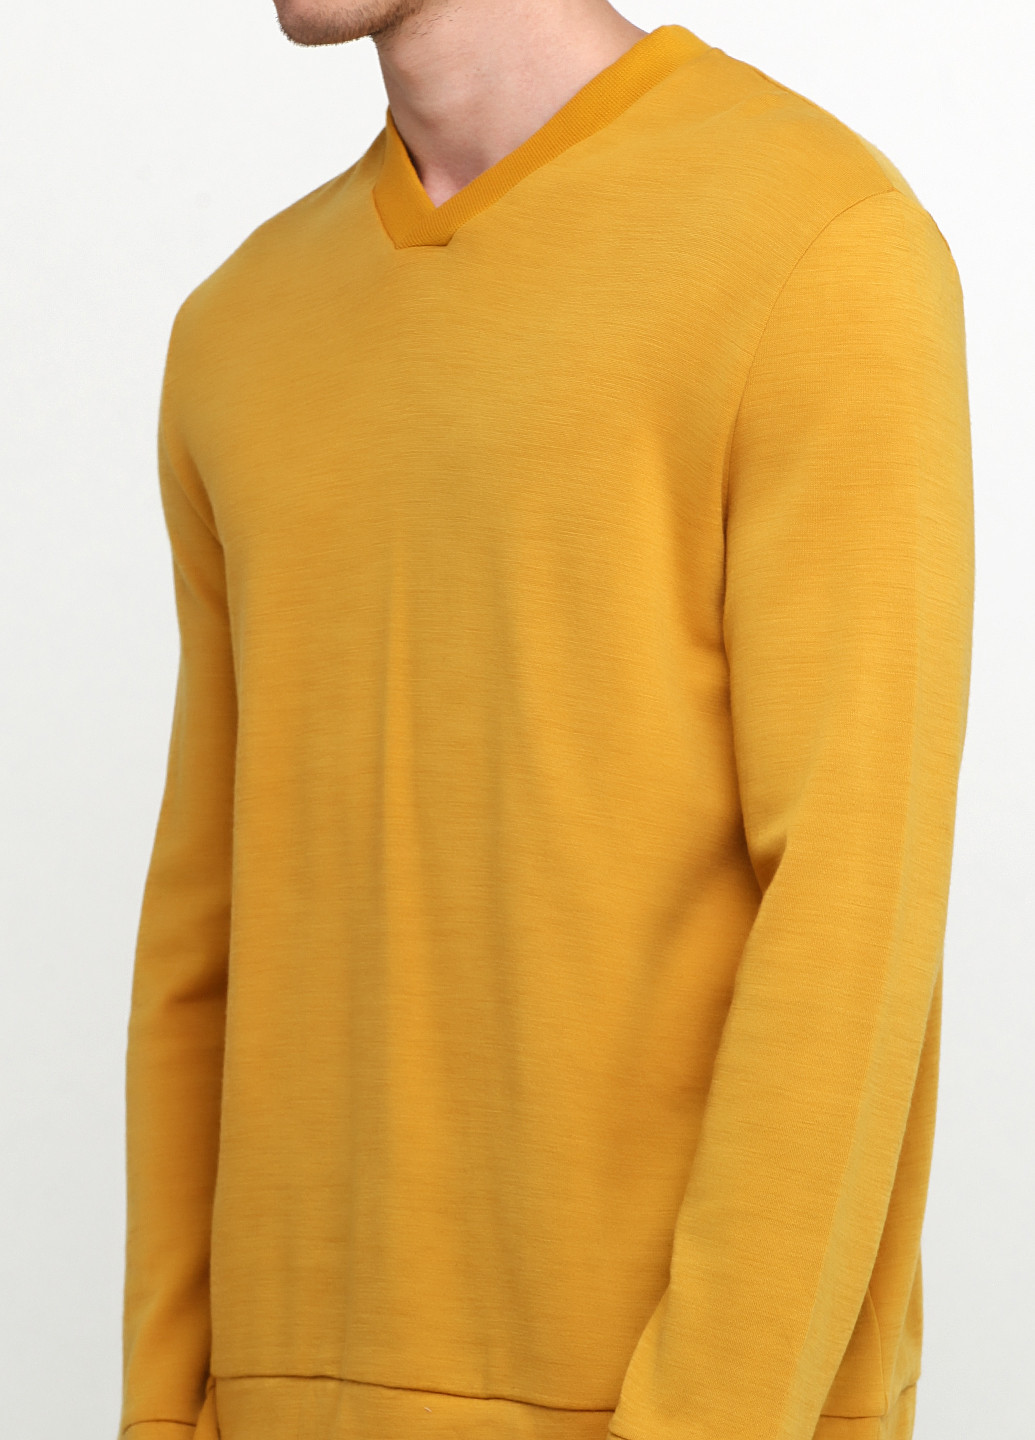 Желтый демисезонный пуловер пуловер Cos